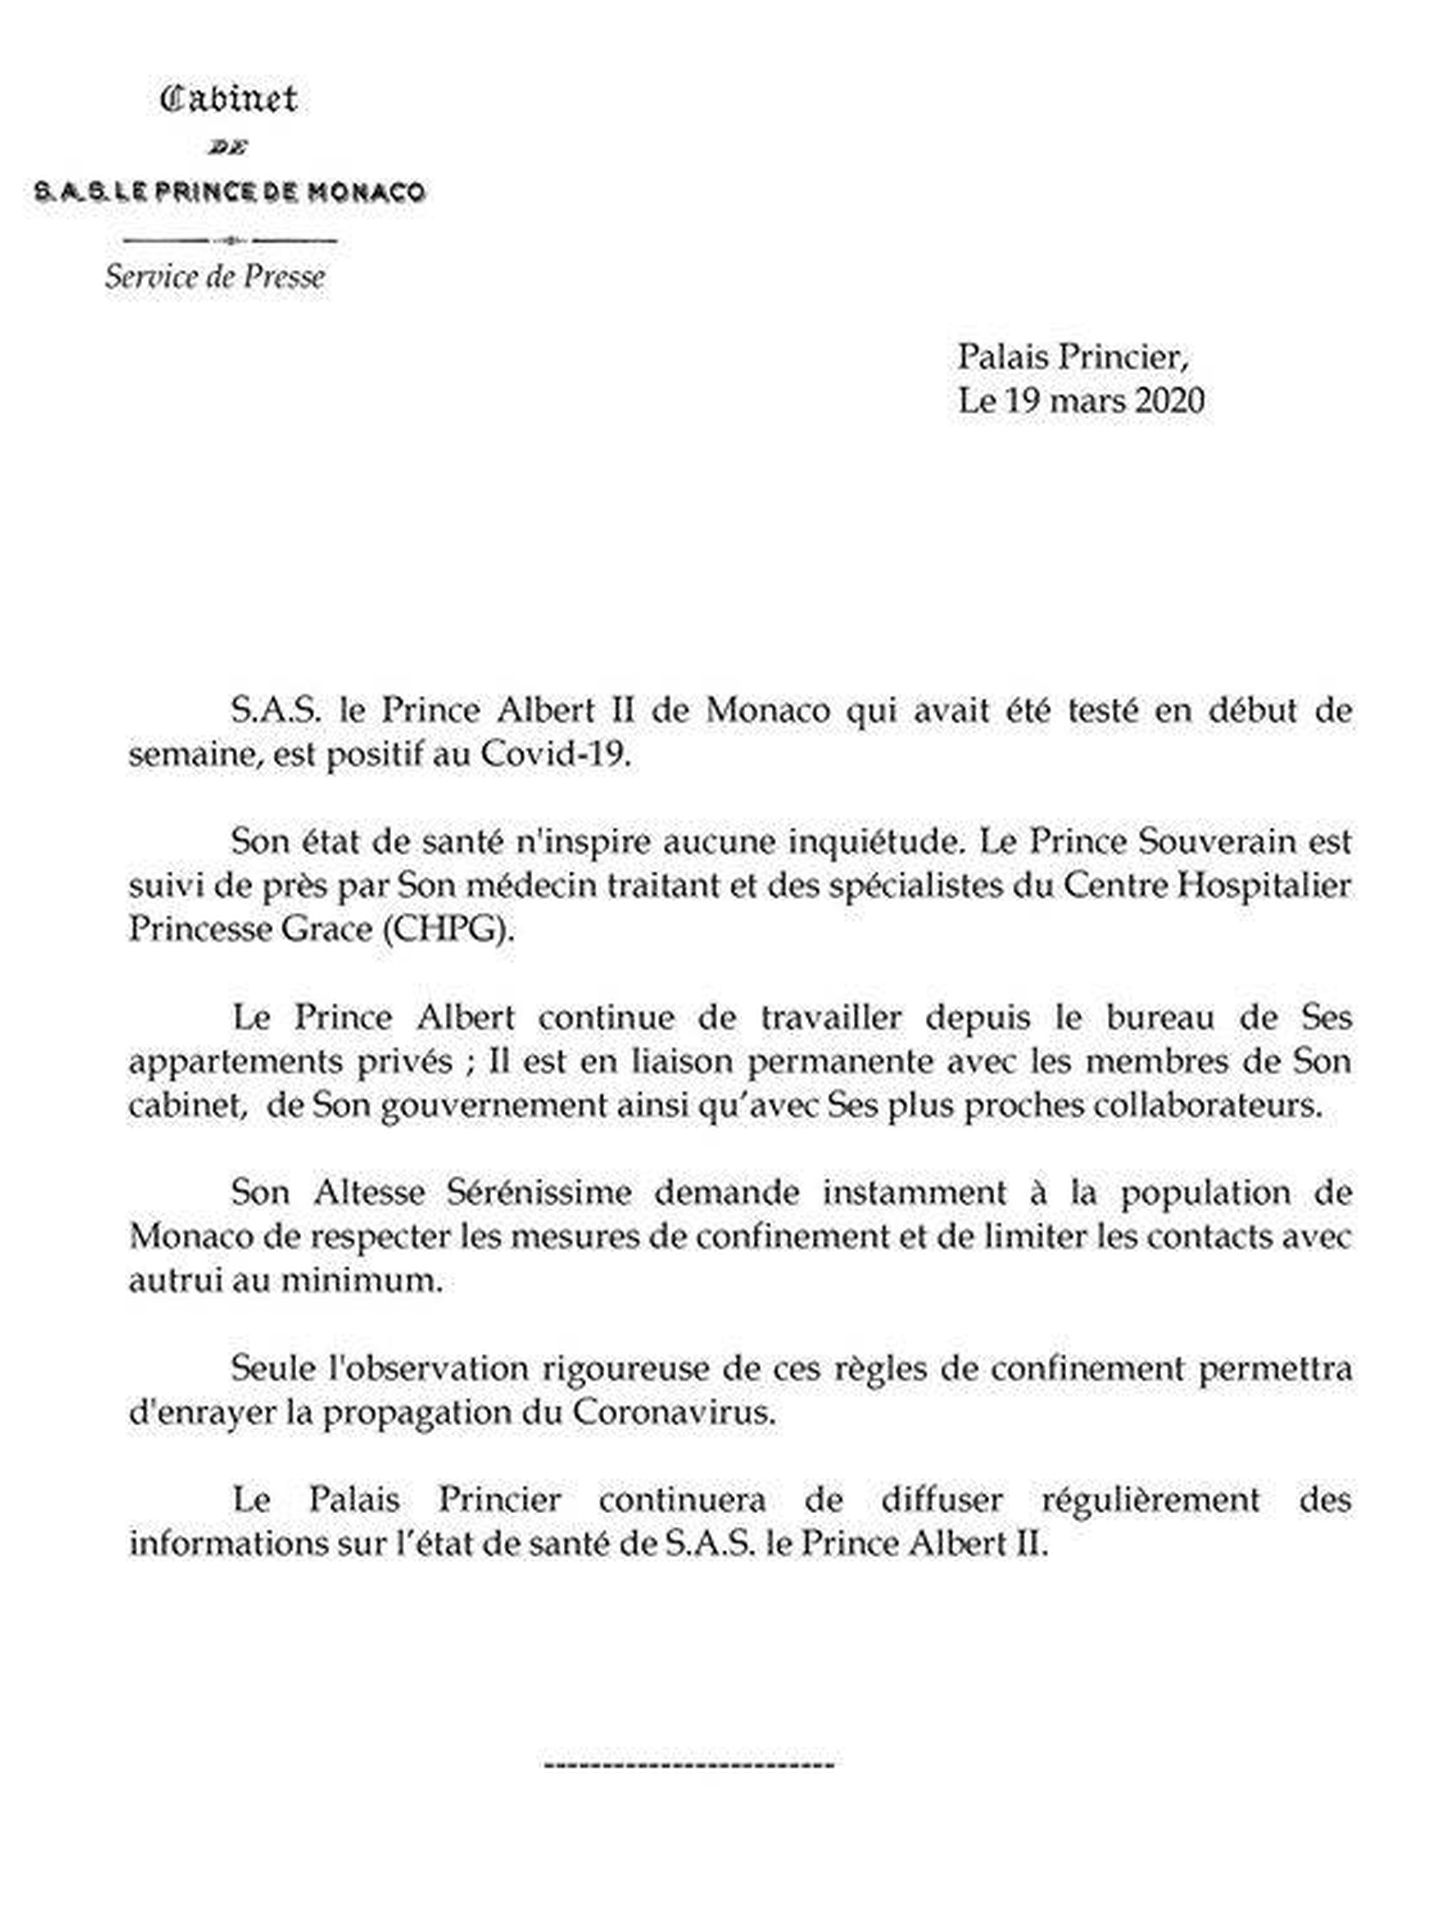 Comunicado emitido por el Palacio del Príncipe. (Palais Princier)